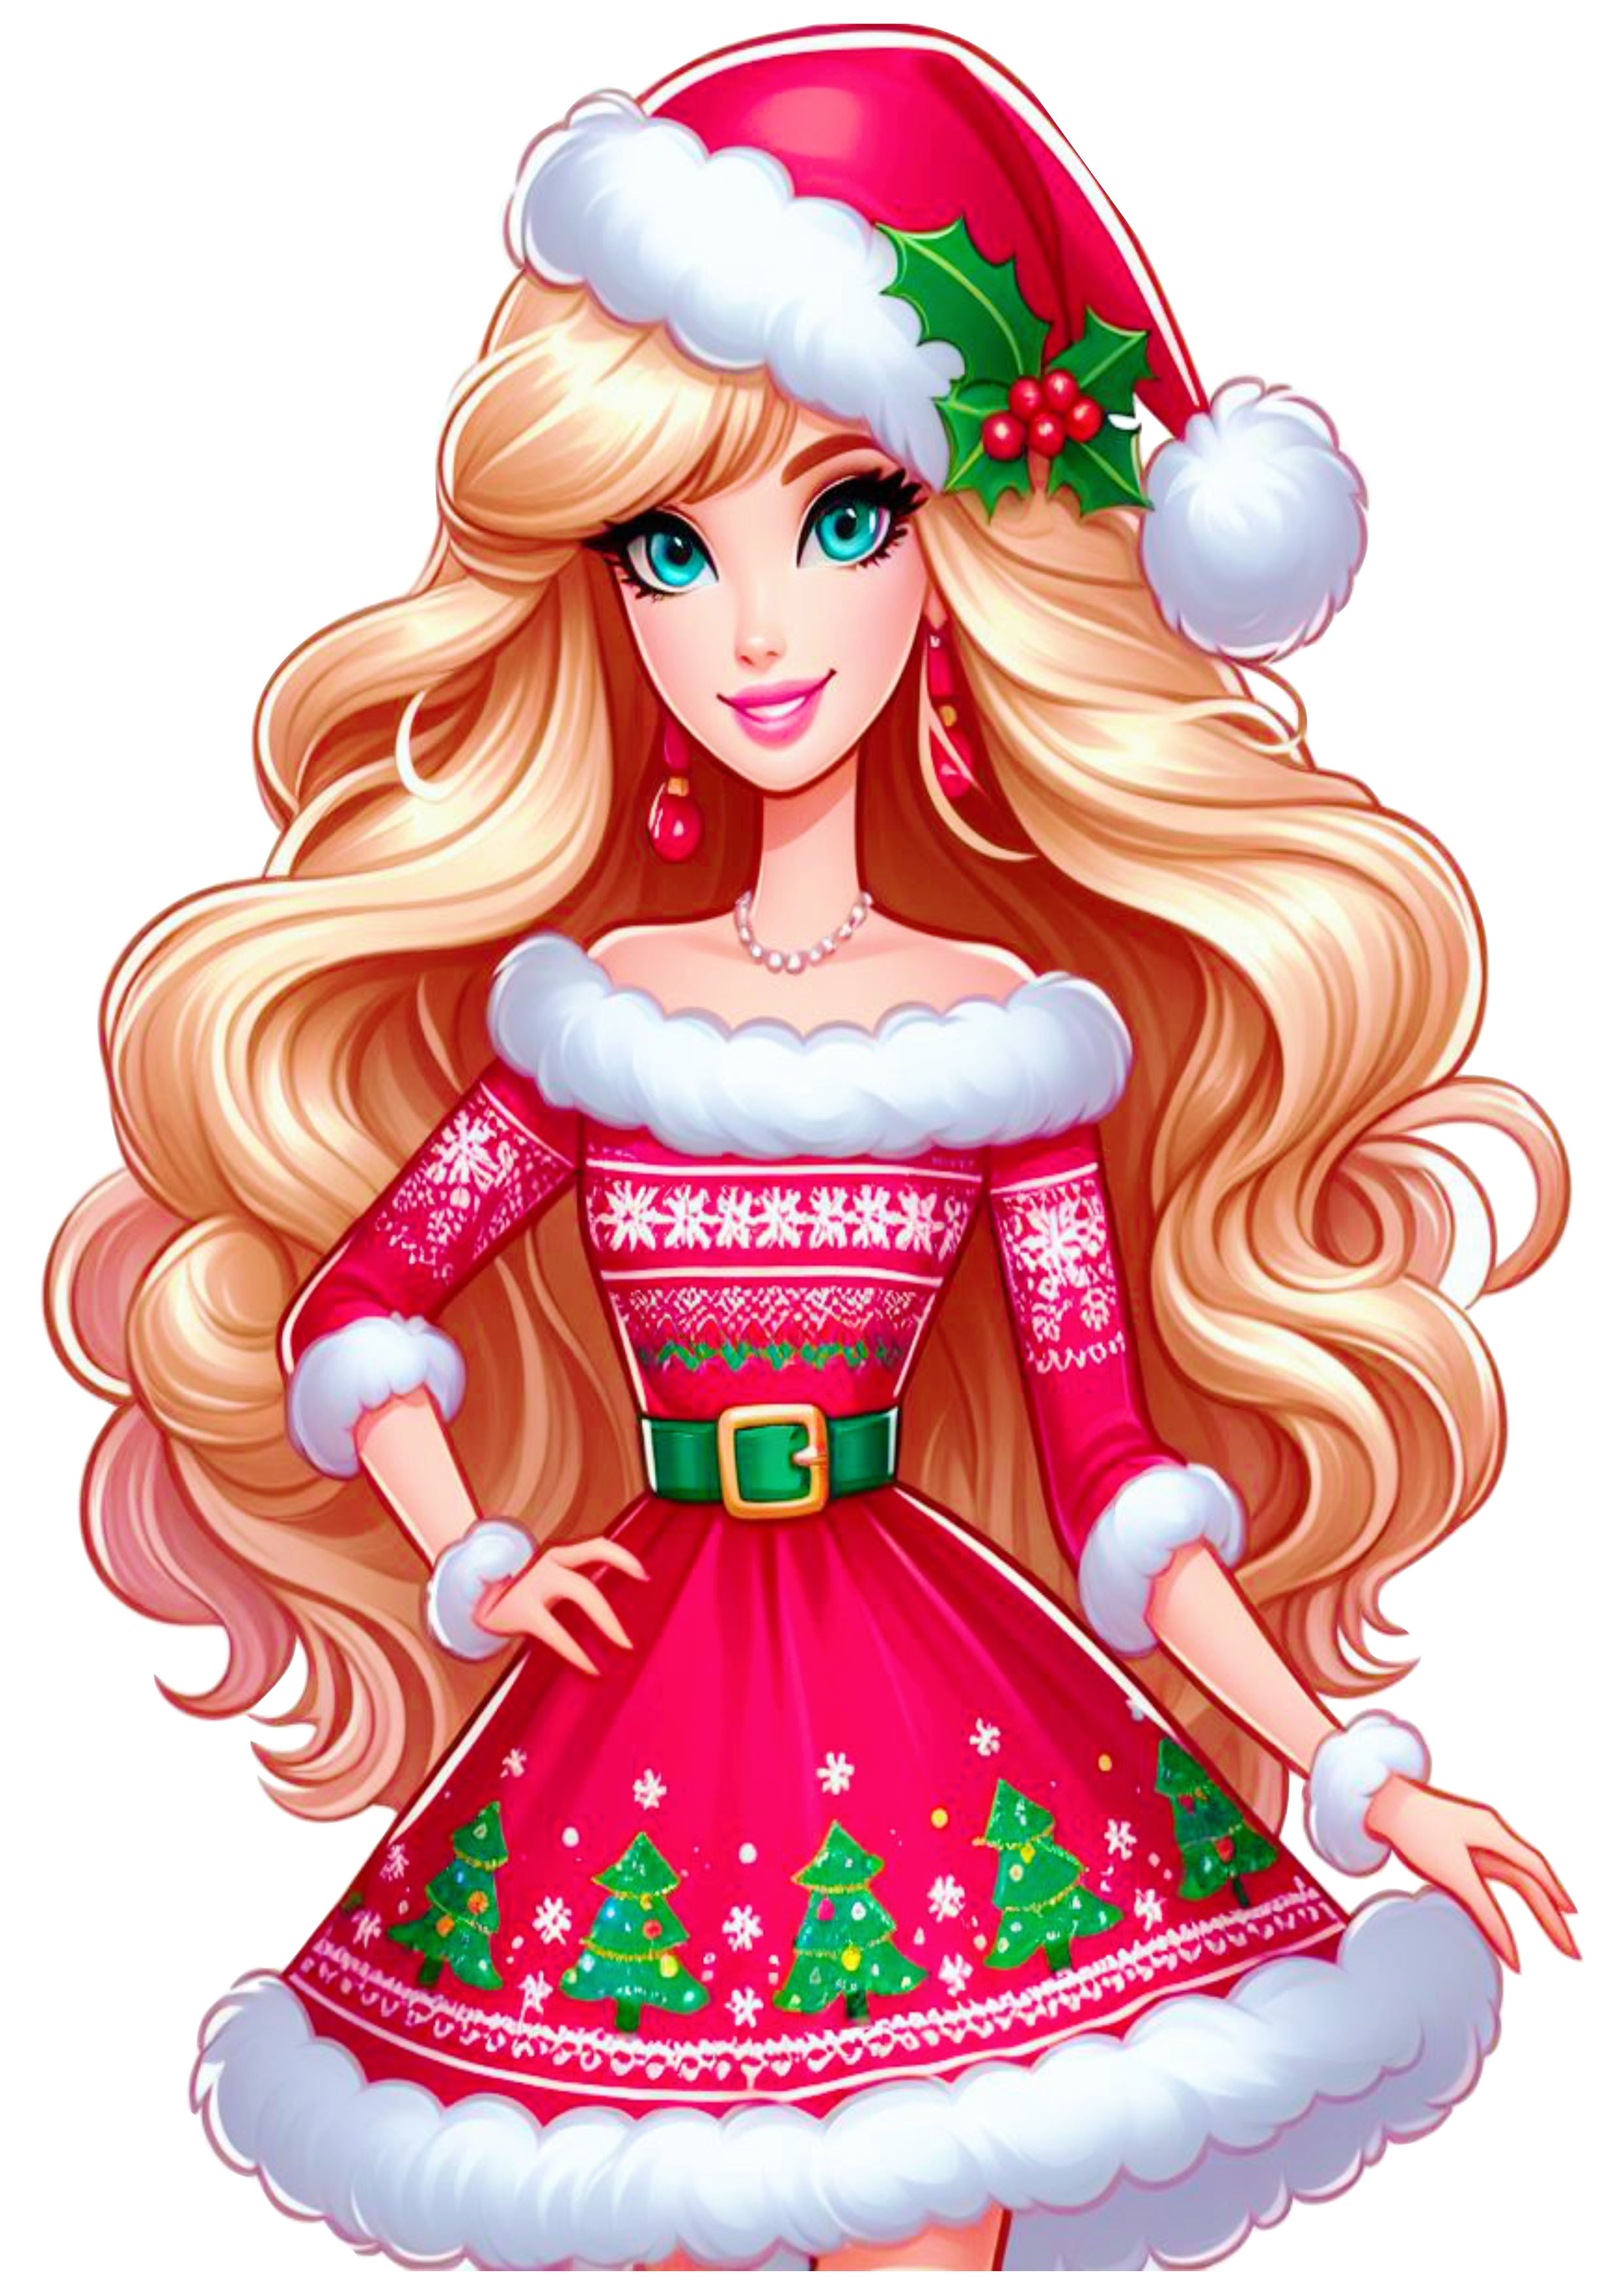 Barbie com roupa de natal boneca brinquedo de menina com gorro do papai noel e joias bonitas animação png